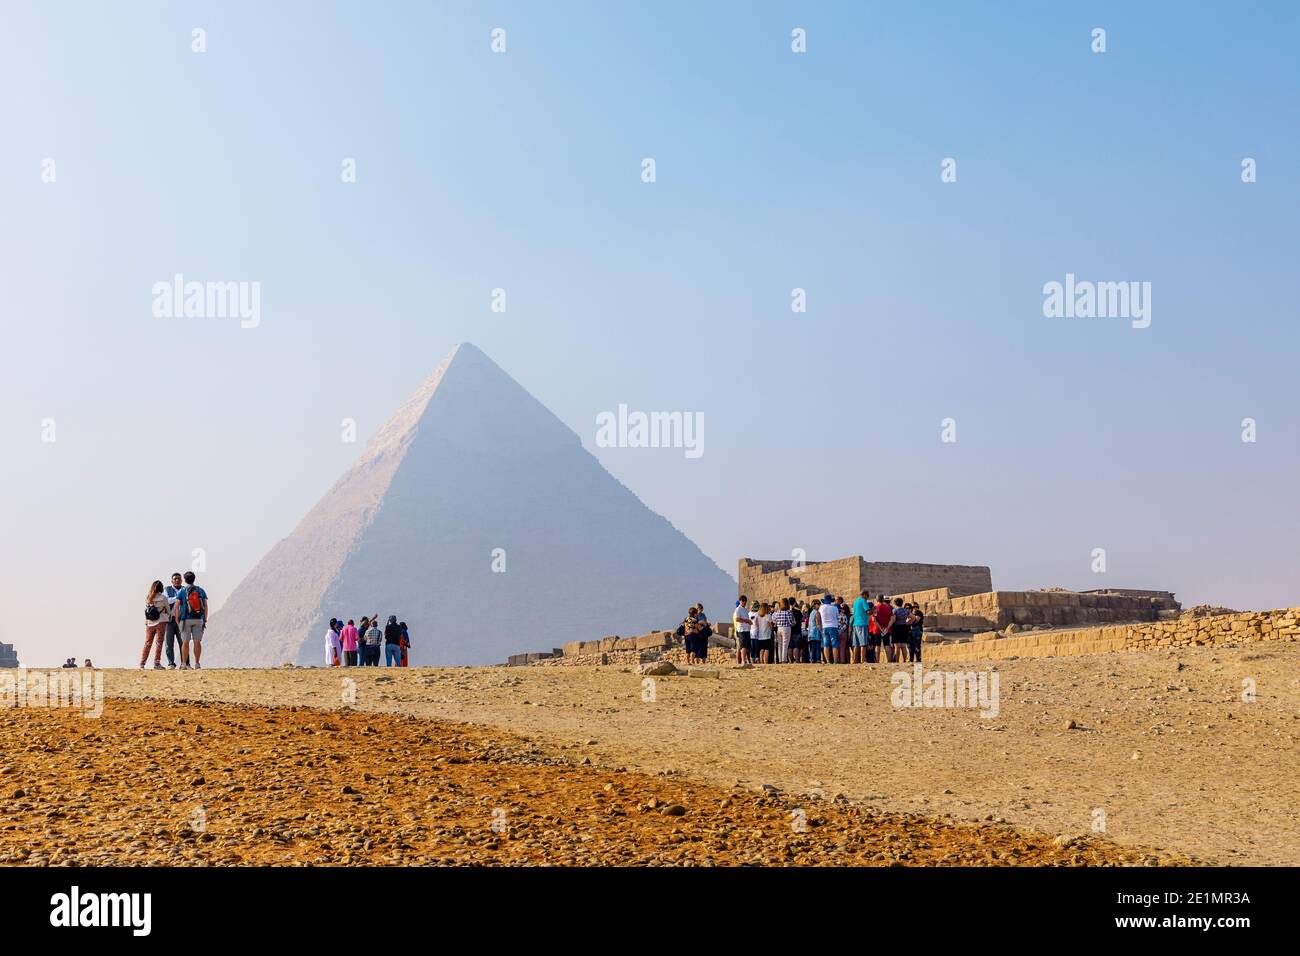 Turistas frente a la Pirámide de Khafre (Chephren) en la Meseta de Giza, el complejo Pirámide de Giza (Necrópolis de Giza), el Cairo, Egipto Foto de stock